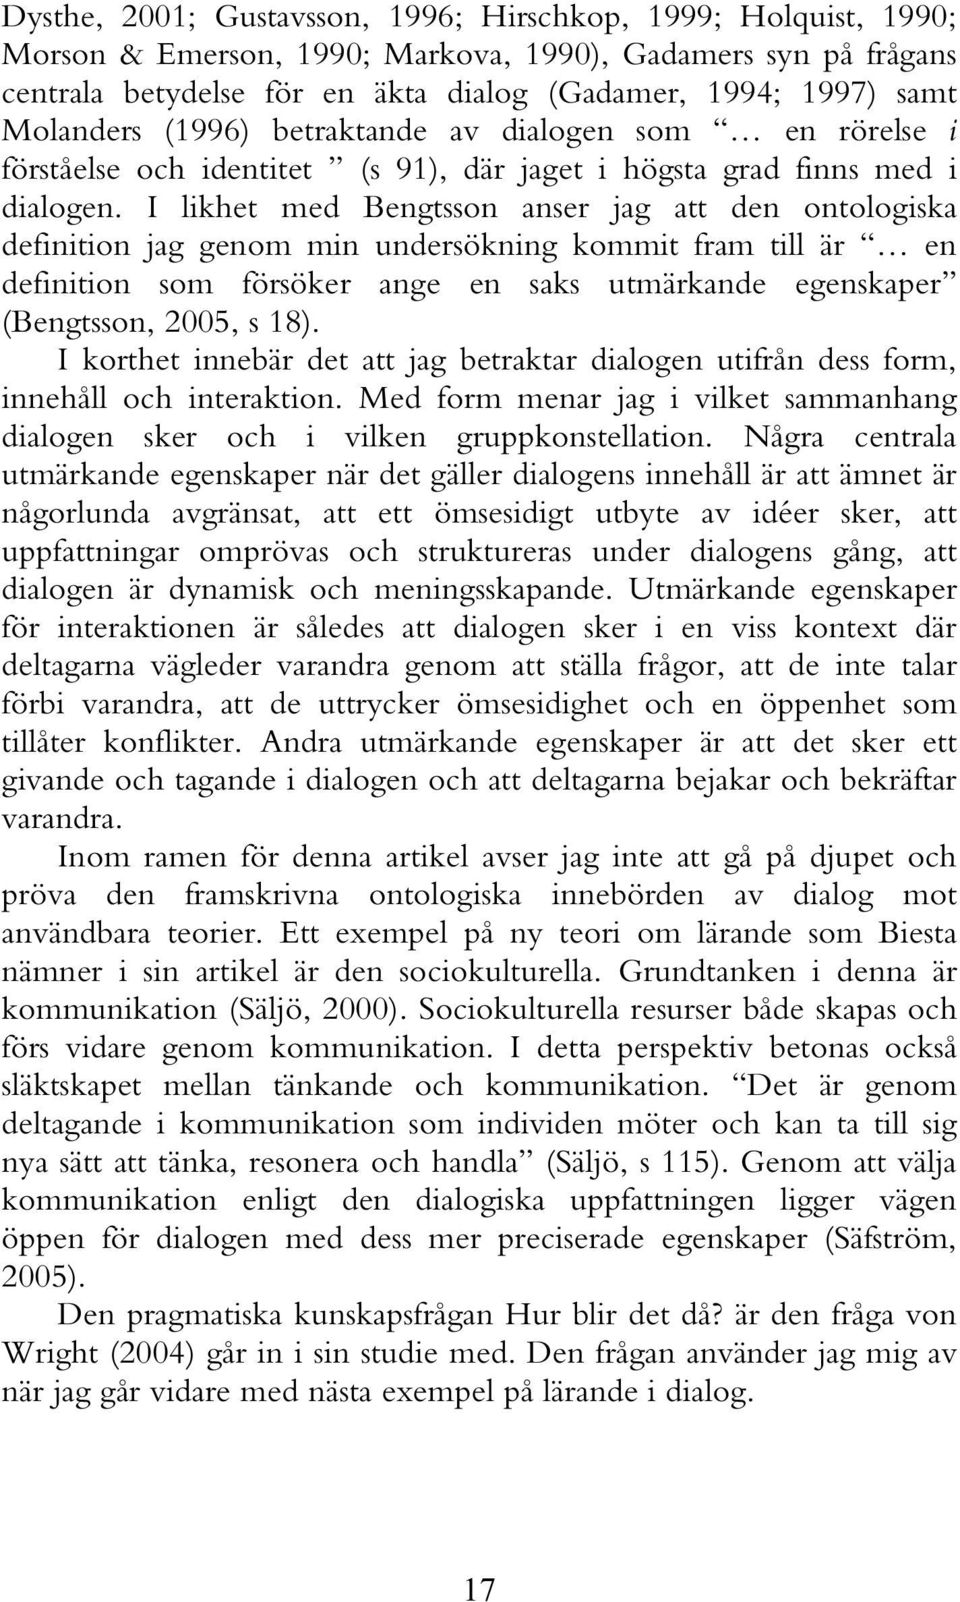 I likhet med Bengtsson anser jag att den ontologiska definition jag genom min undersökning kommit fram till är en definition som försöker ange en saks utmärkande egenskaper (Bengtsson, 2005, s 18).